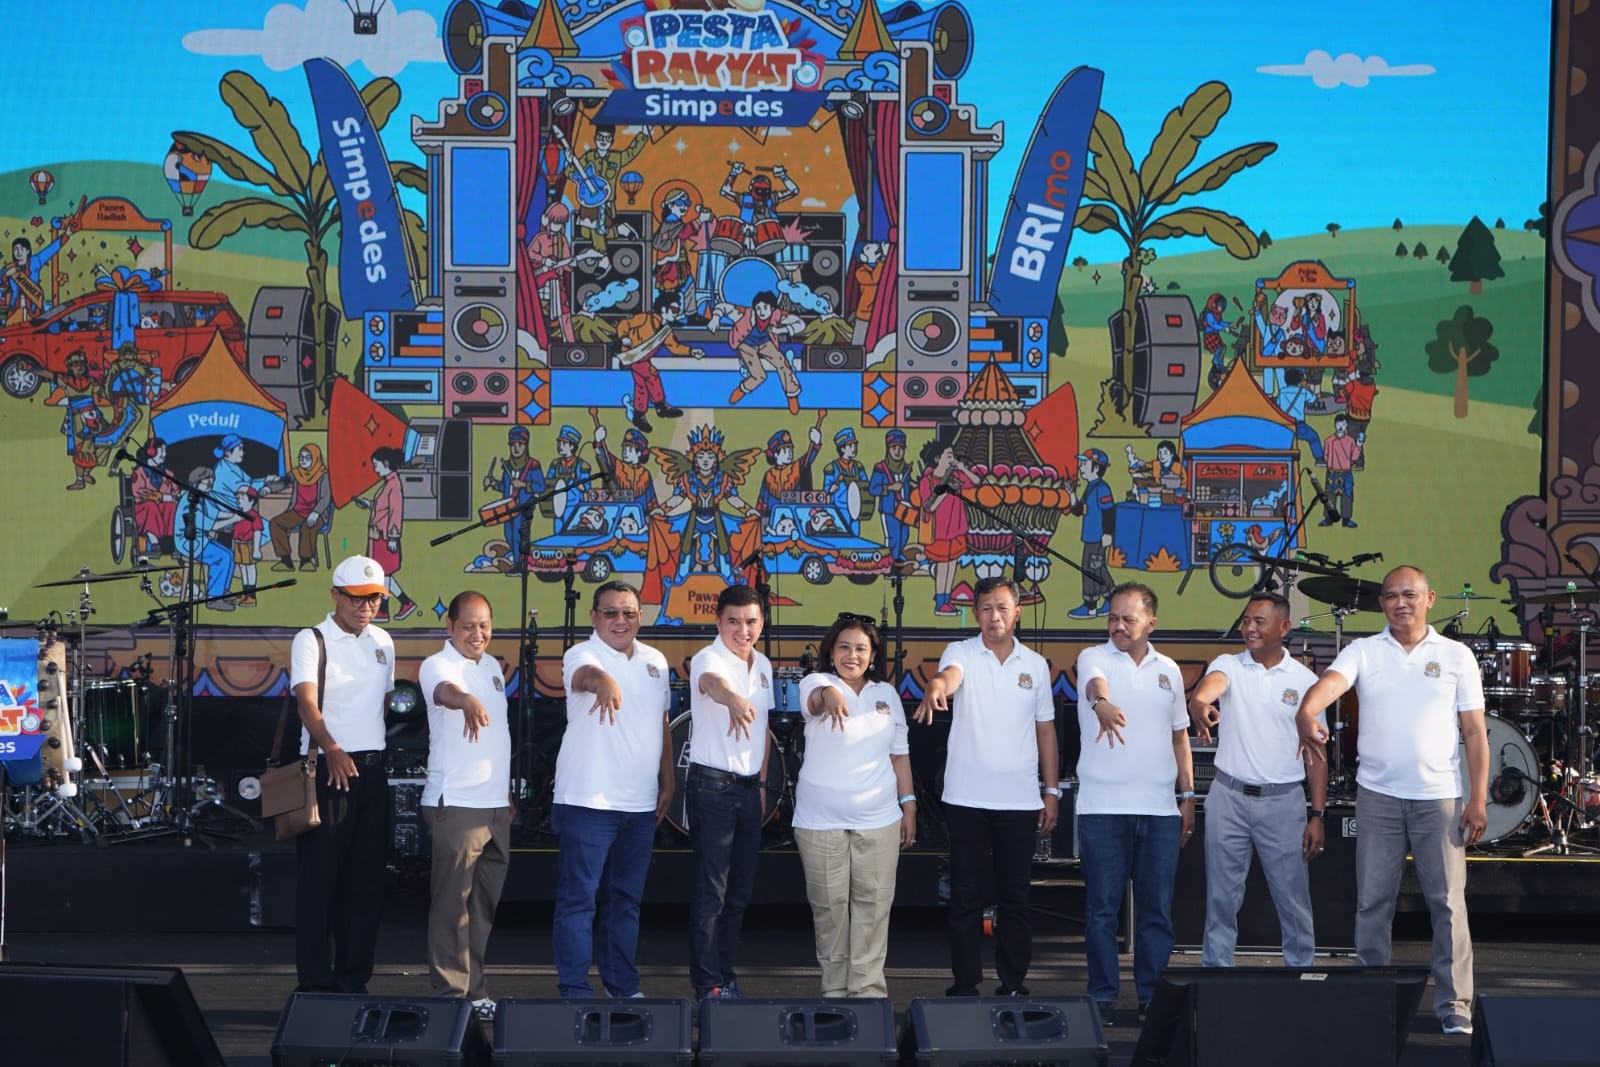 Pesta Rakyat Simpedes, BRI Gandeng 100 UMKM Tampilkan Band Lokal dan Nasional